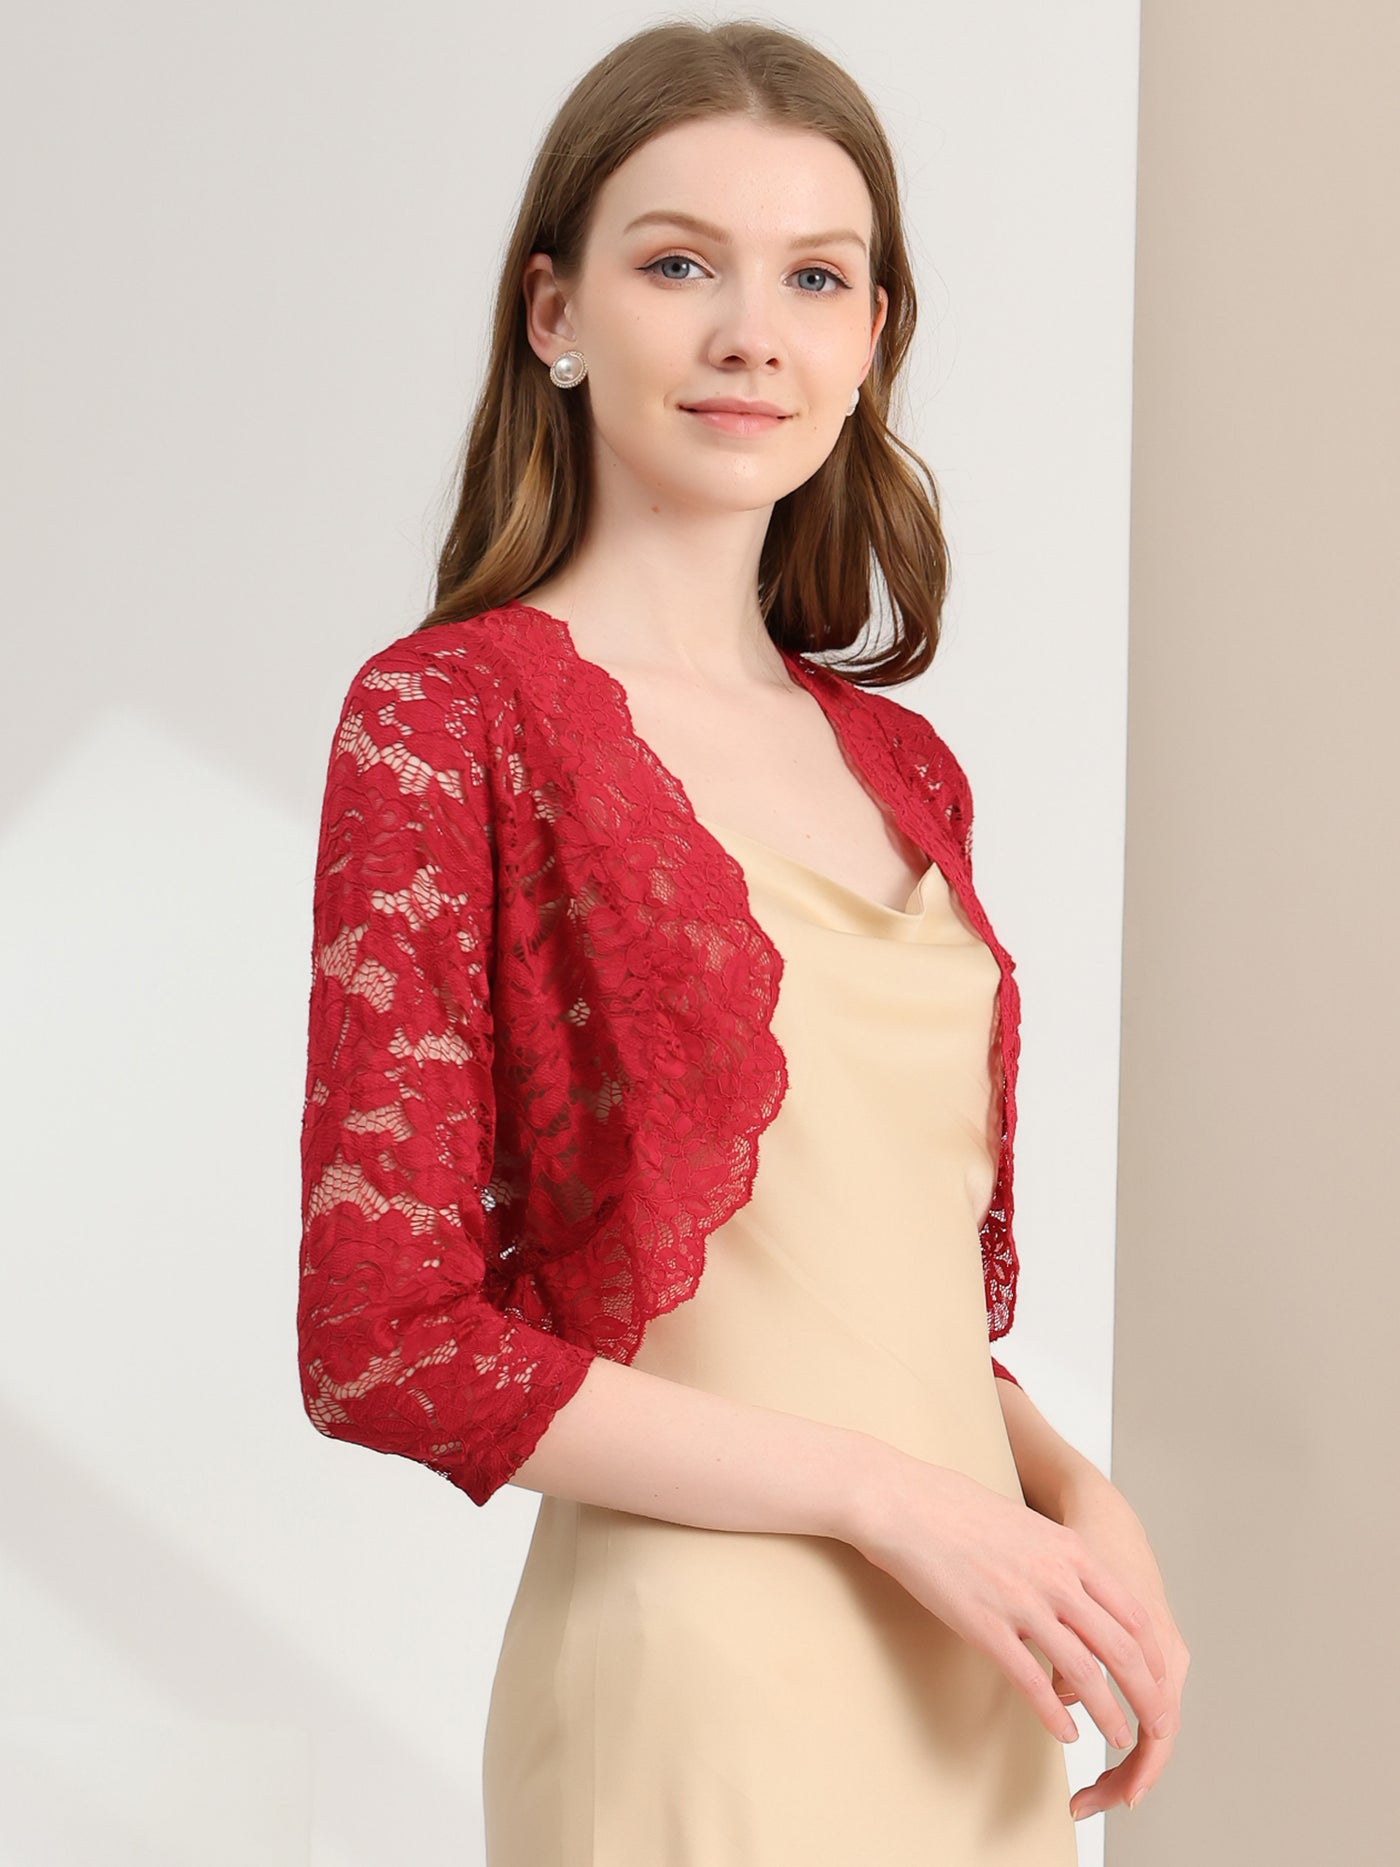 Allegra K Elegant 3/4 Sleeve Sheer Floral Lace Shrug Top